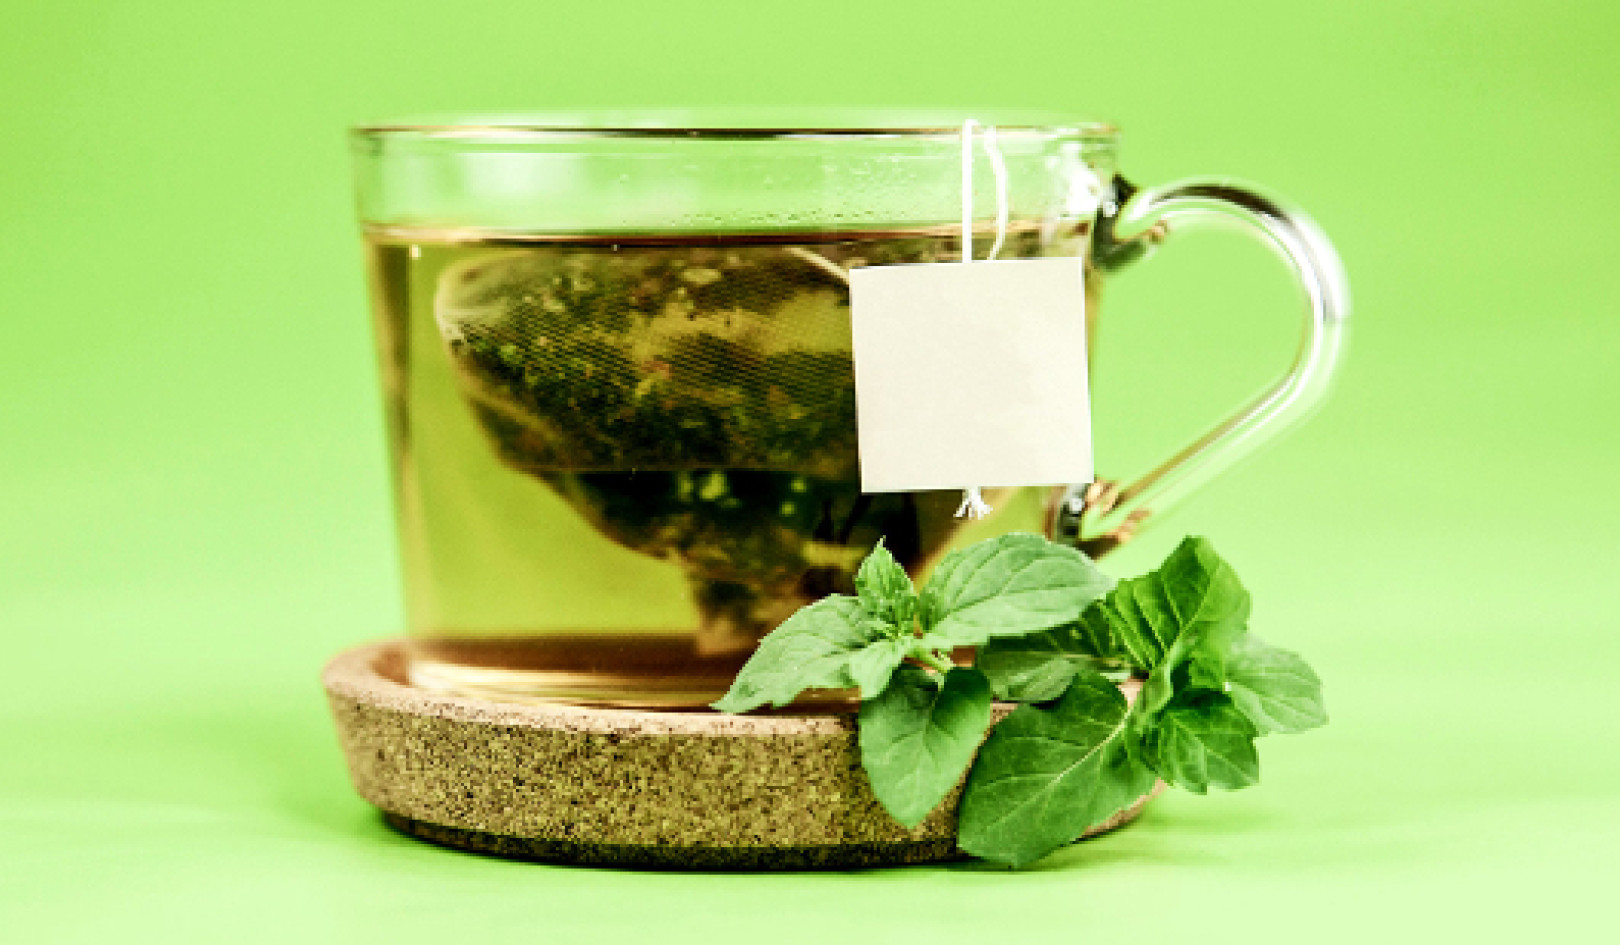 Verbindungen in Wein und grünem Tee können Alzheimer verlangsamen?